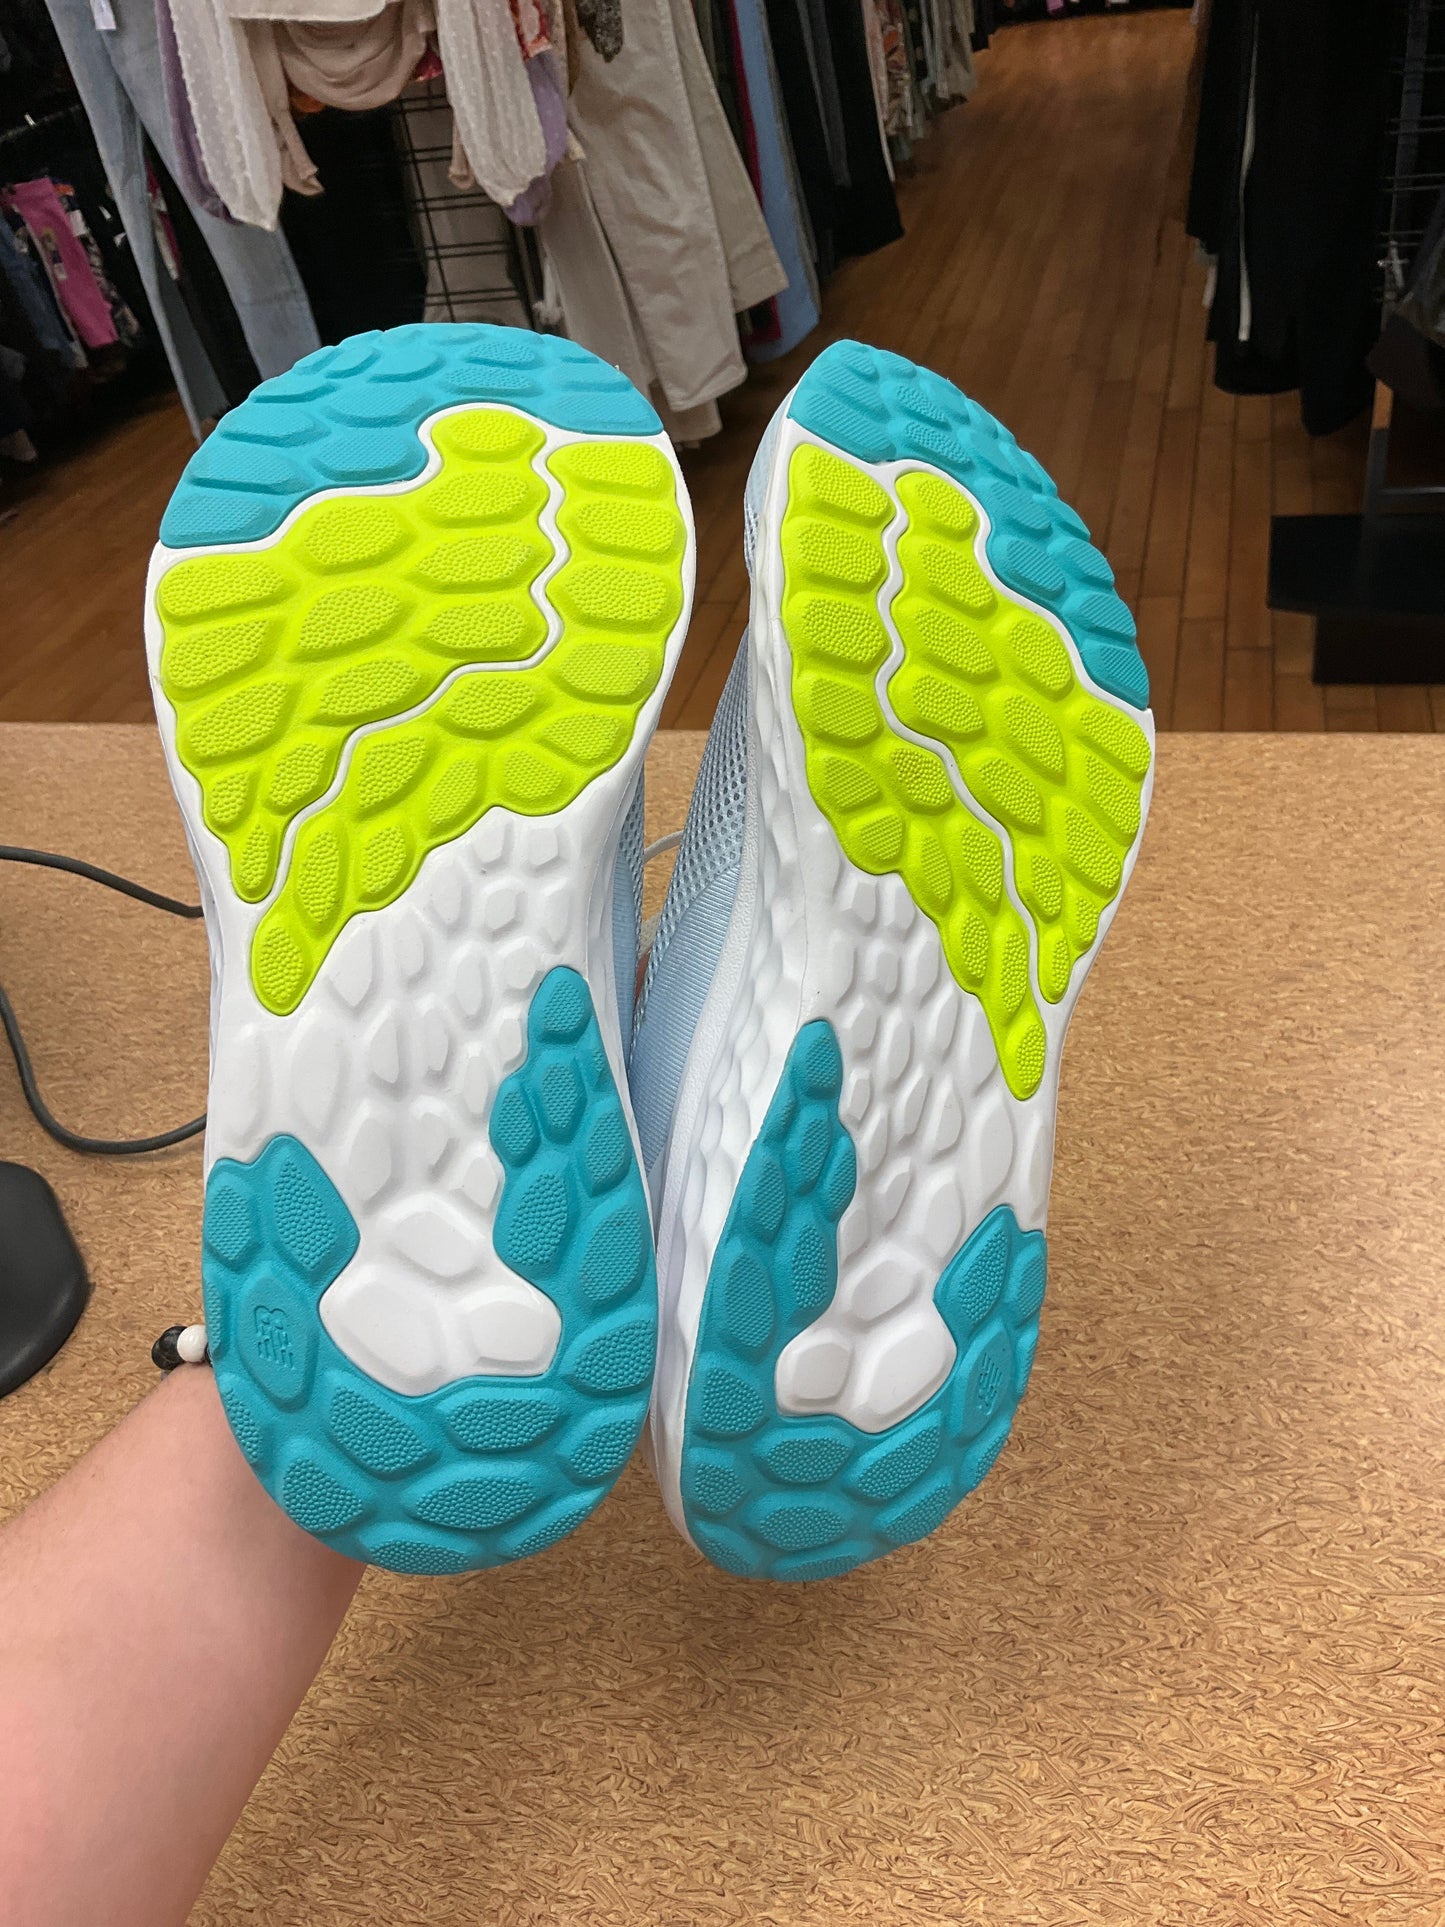 Blue Shoes Athletic Nike, Size 6.5